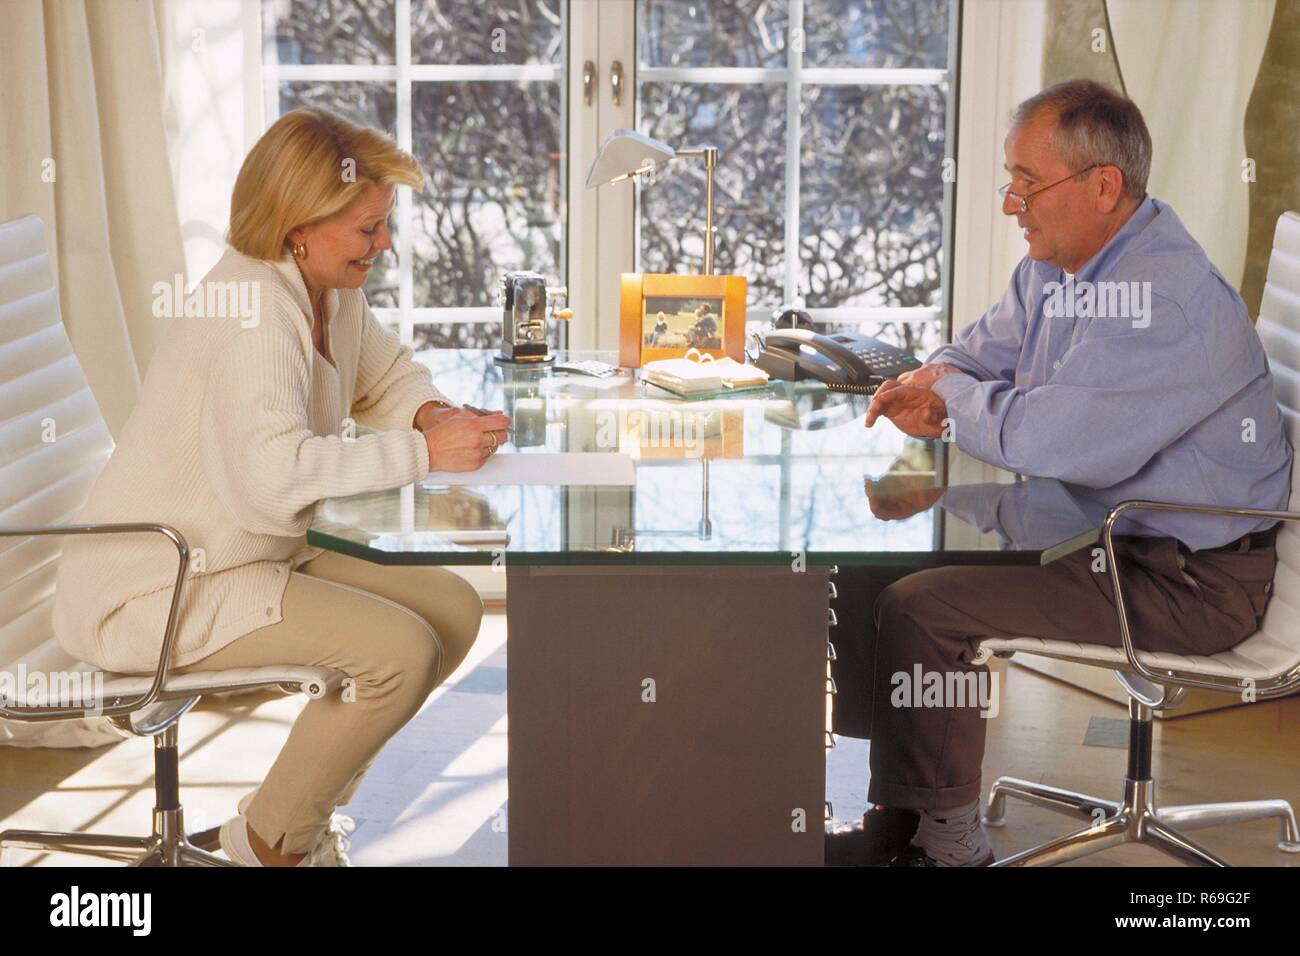 Innenraum, Ganzfigur, Profil, Seniorenpaar Mitte 60 sitzt sich am Glastisch vor dem Fenster gegenueber, die Frau macht Notizen Foto Stock